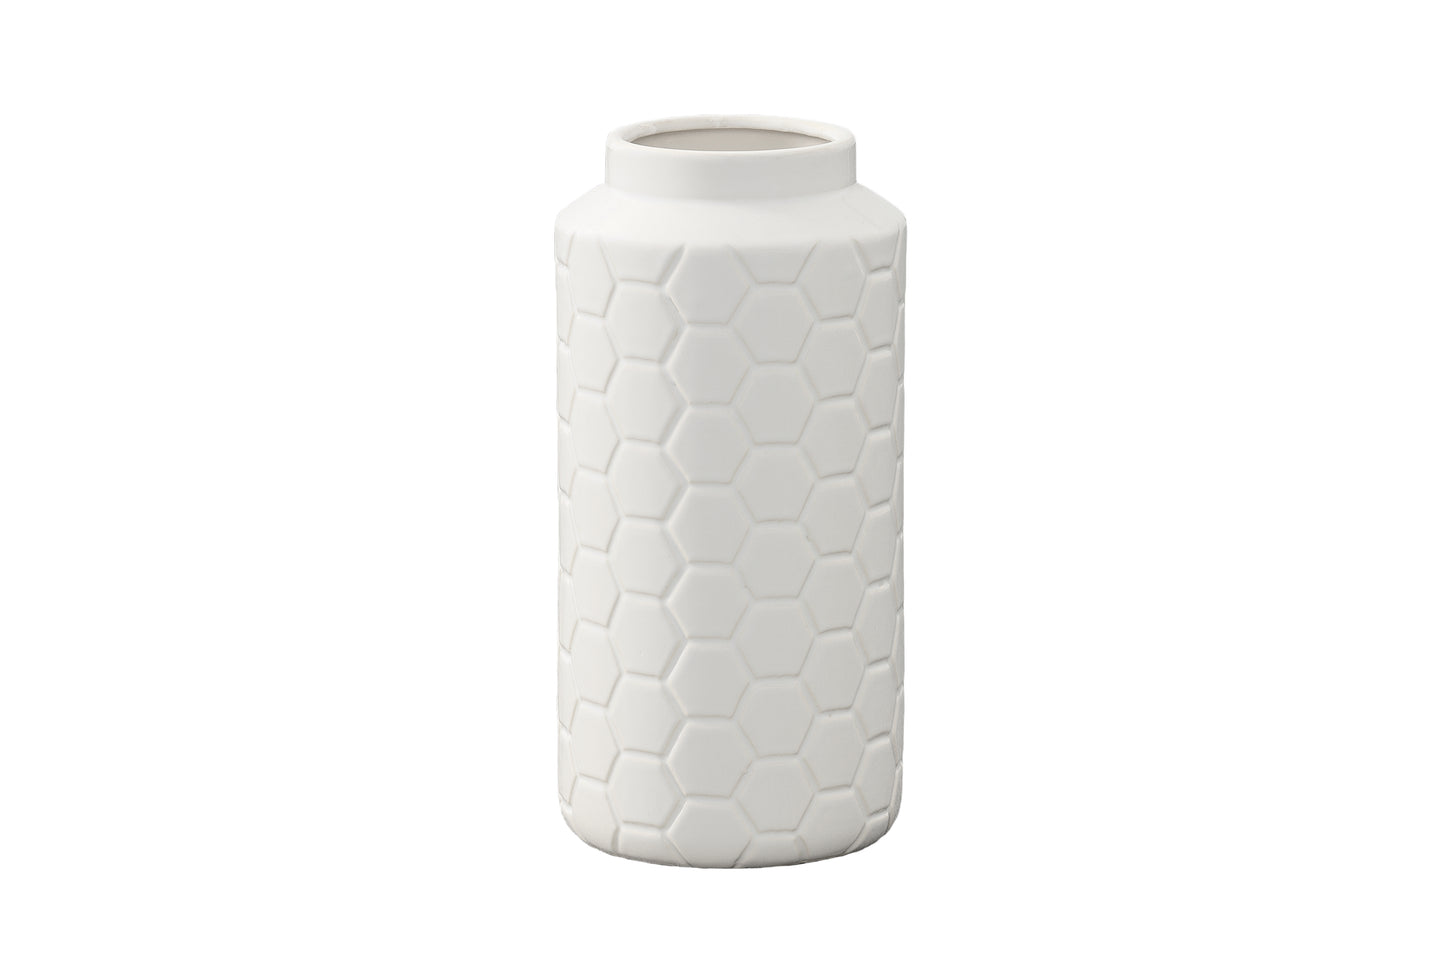 Ceramic Round Vase with Seamleass Octagon Pattern Design